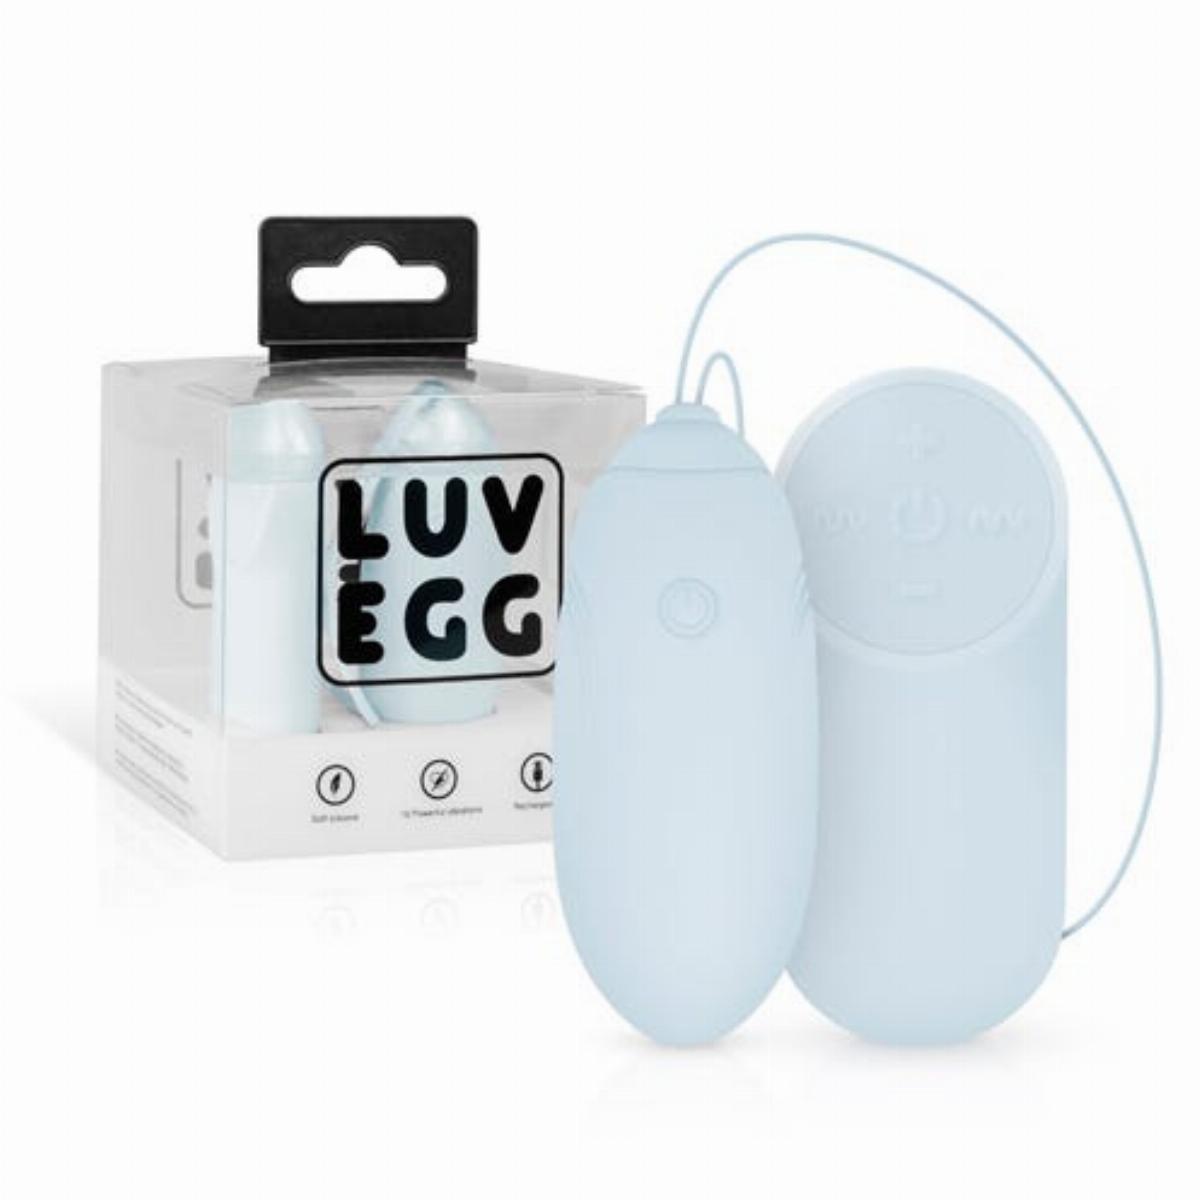 LUV EGG Vibrating Egg Blue